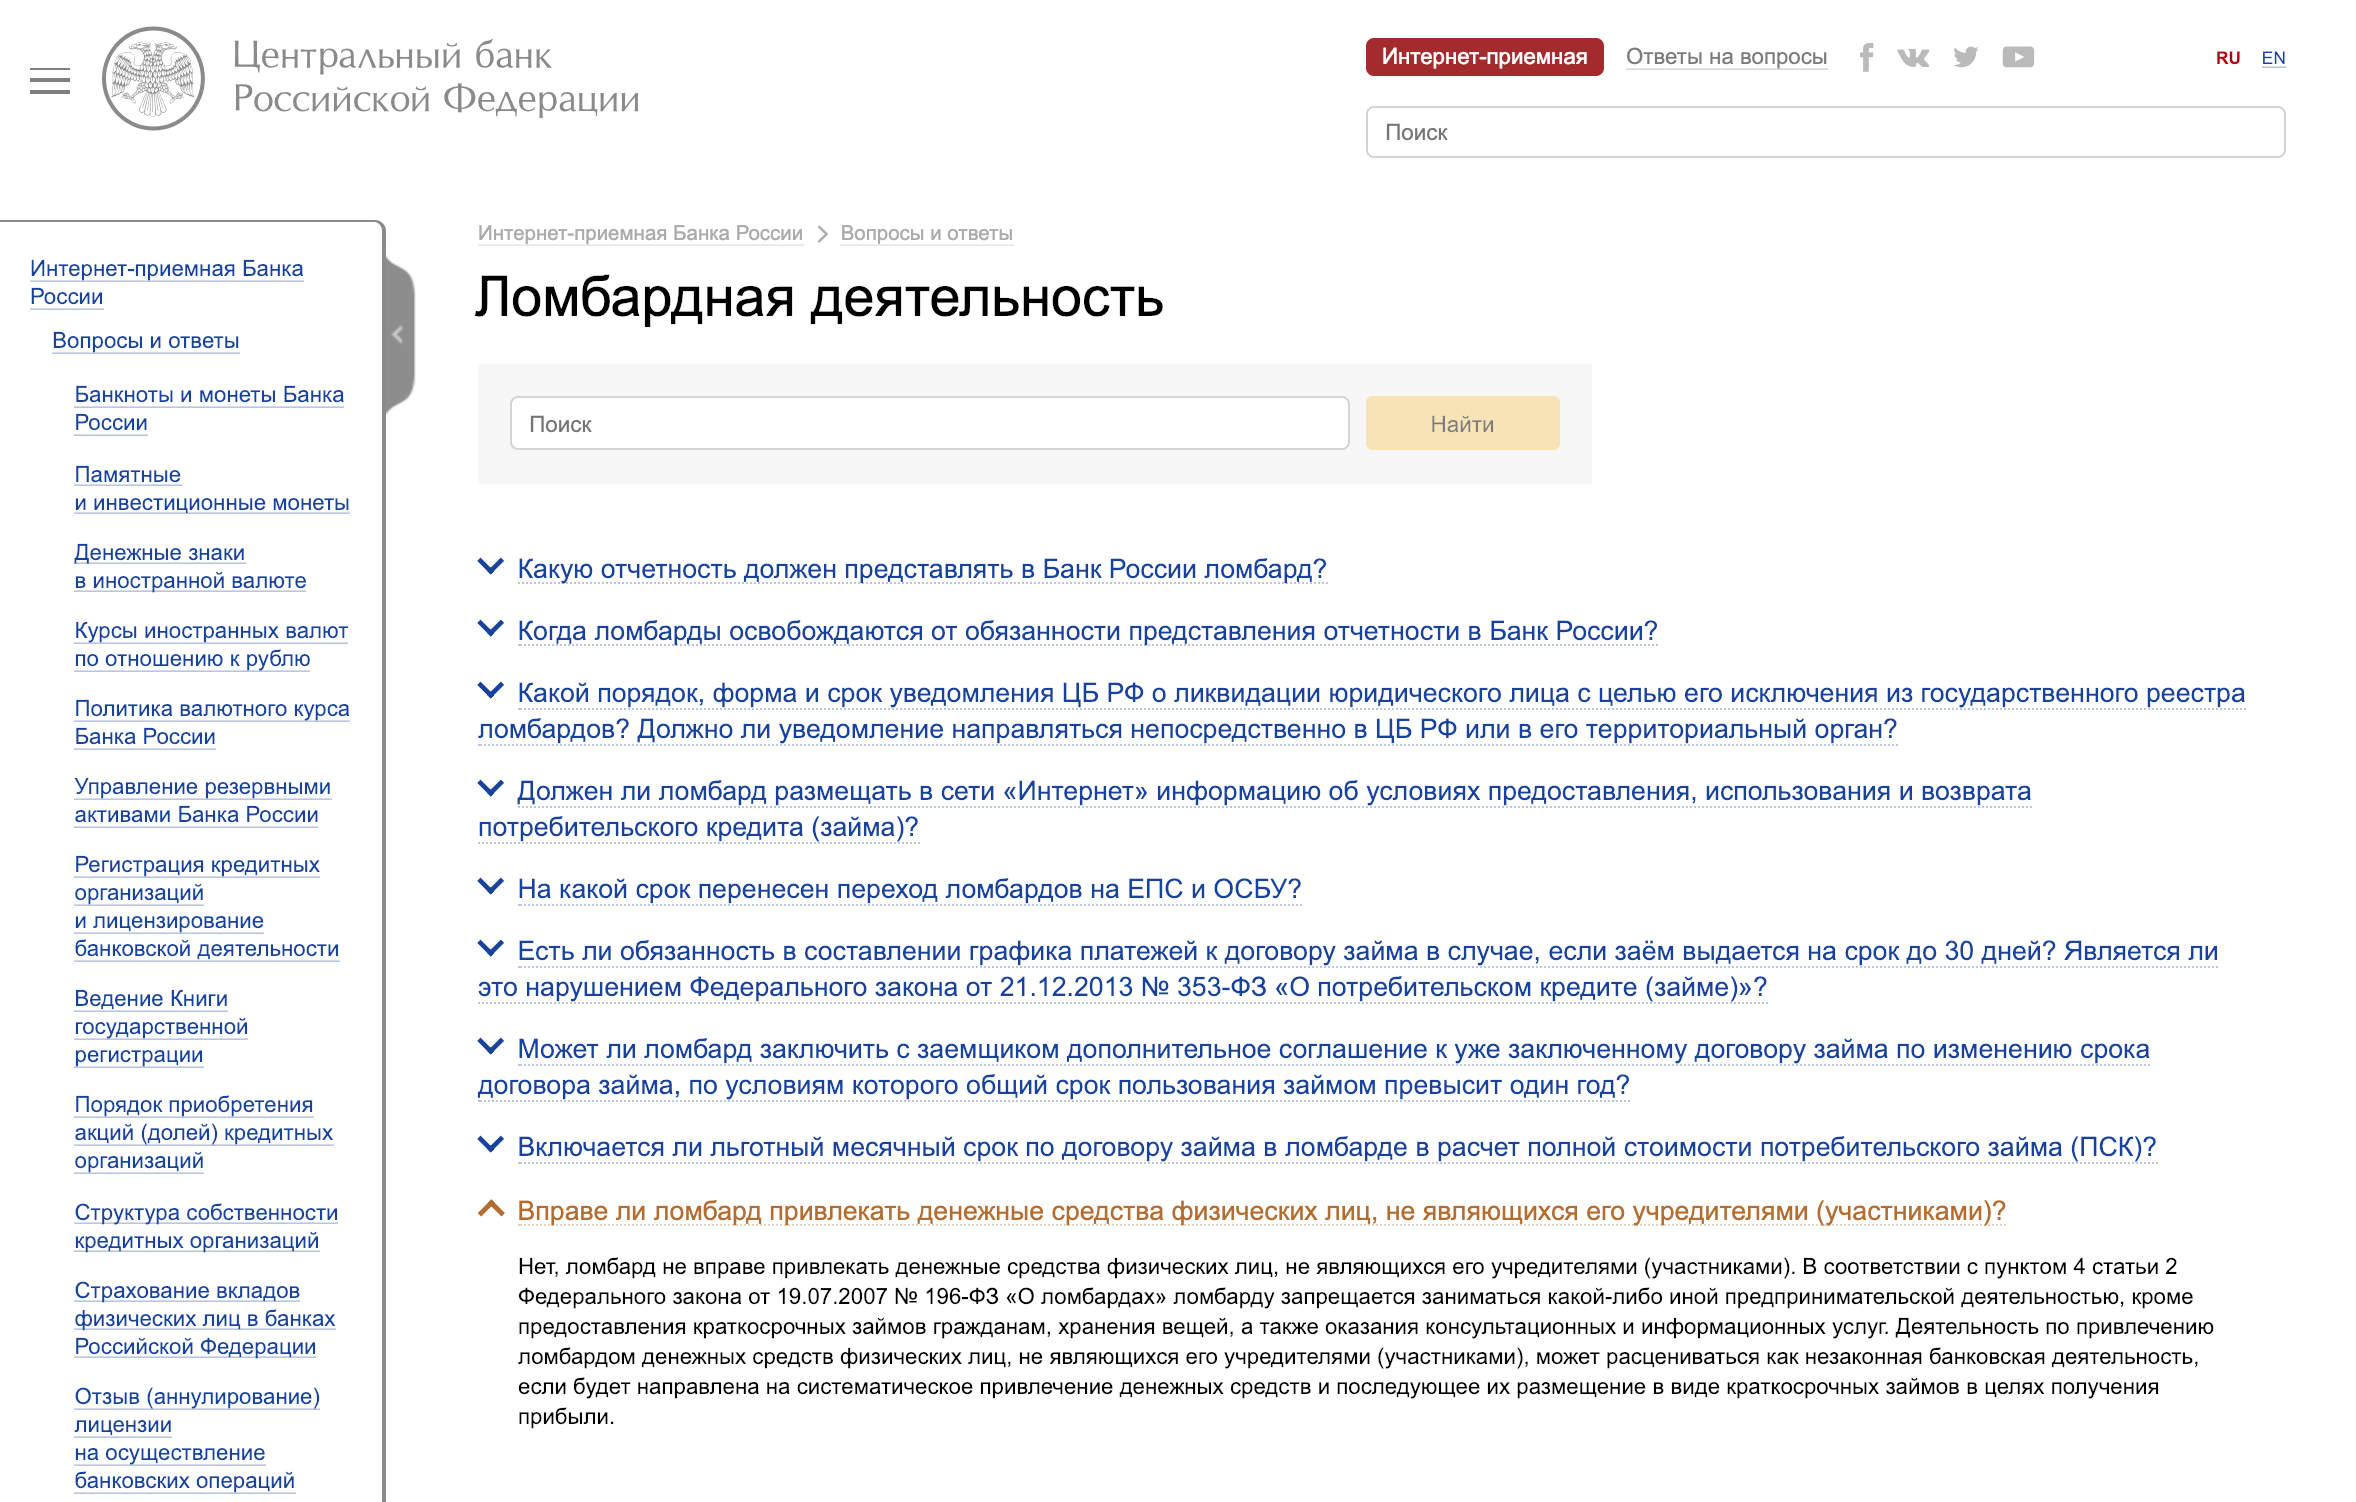 ЦБ РФ на своем сайте грозит уголовной ответственностью ломбардам, которые привлекают деньги от вкладчиков